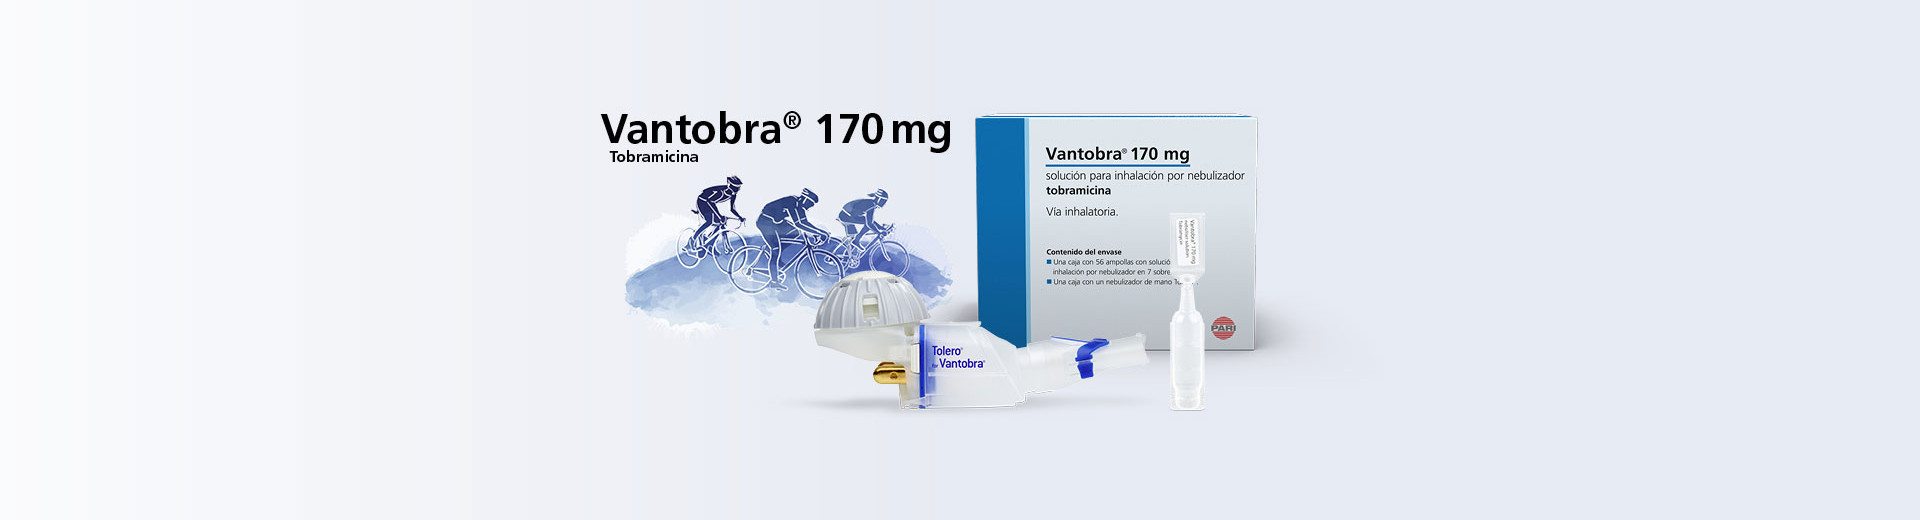 Vantobra 170 mg Tobramicina